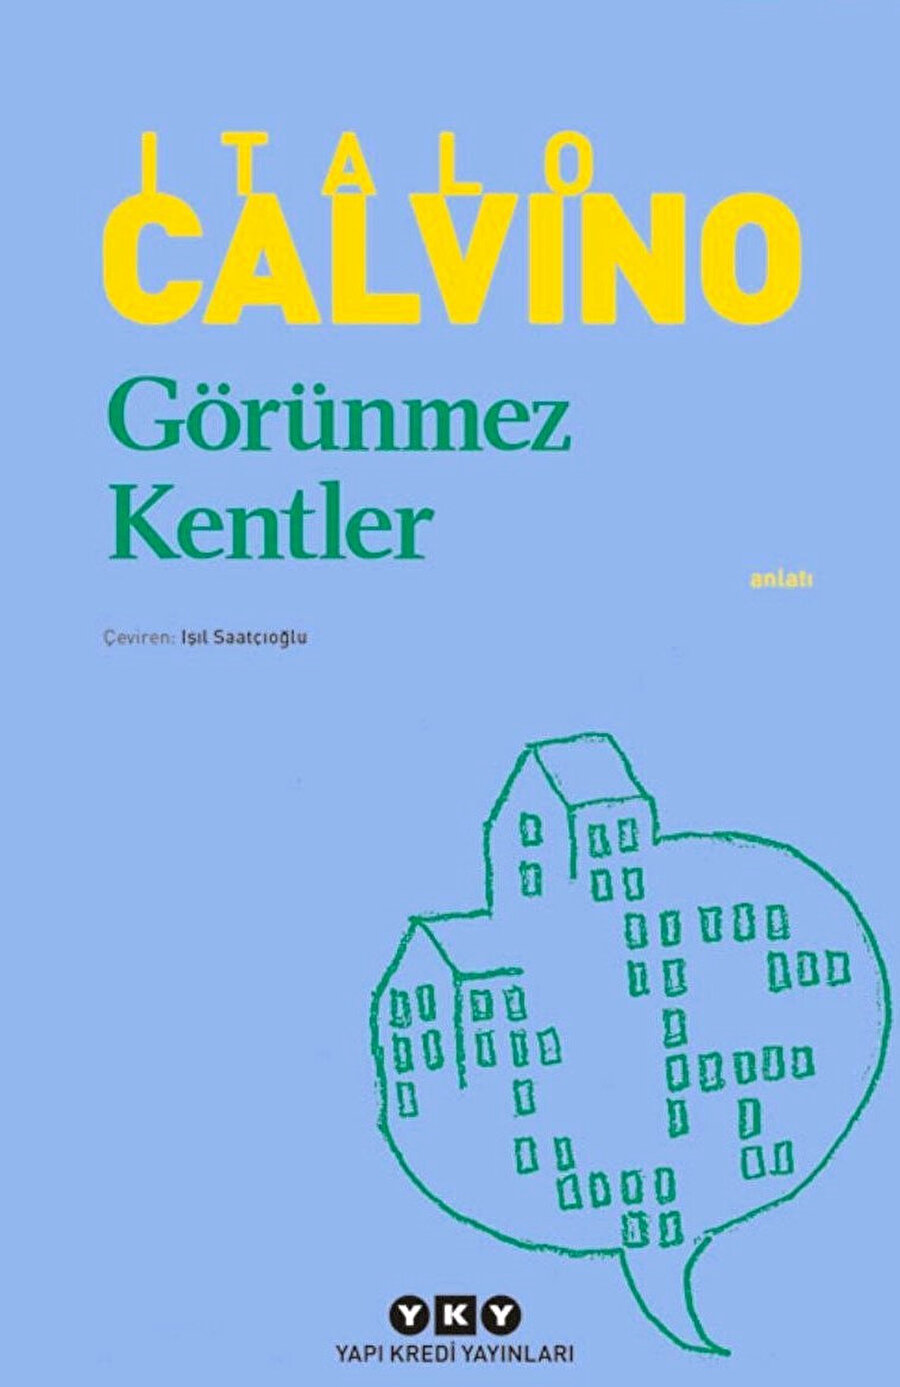 Italo Calvino, Görünmez Kentler, Yapı Kredi Yayınları.